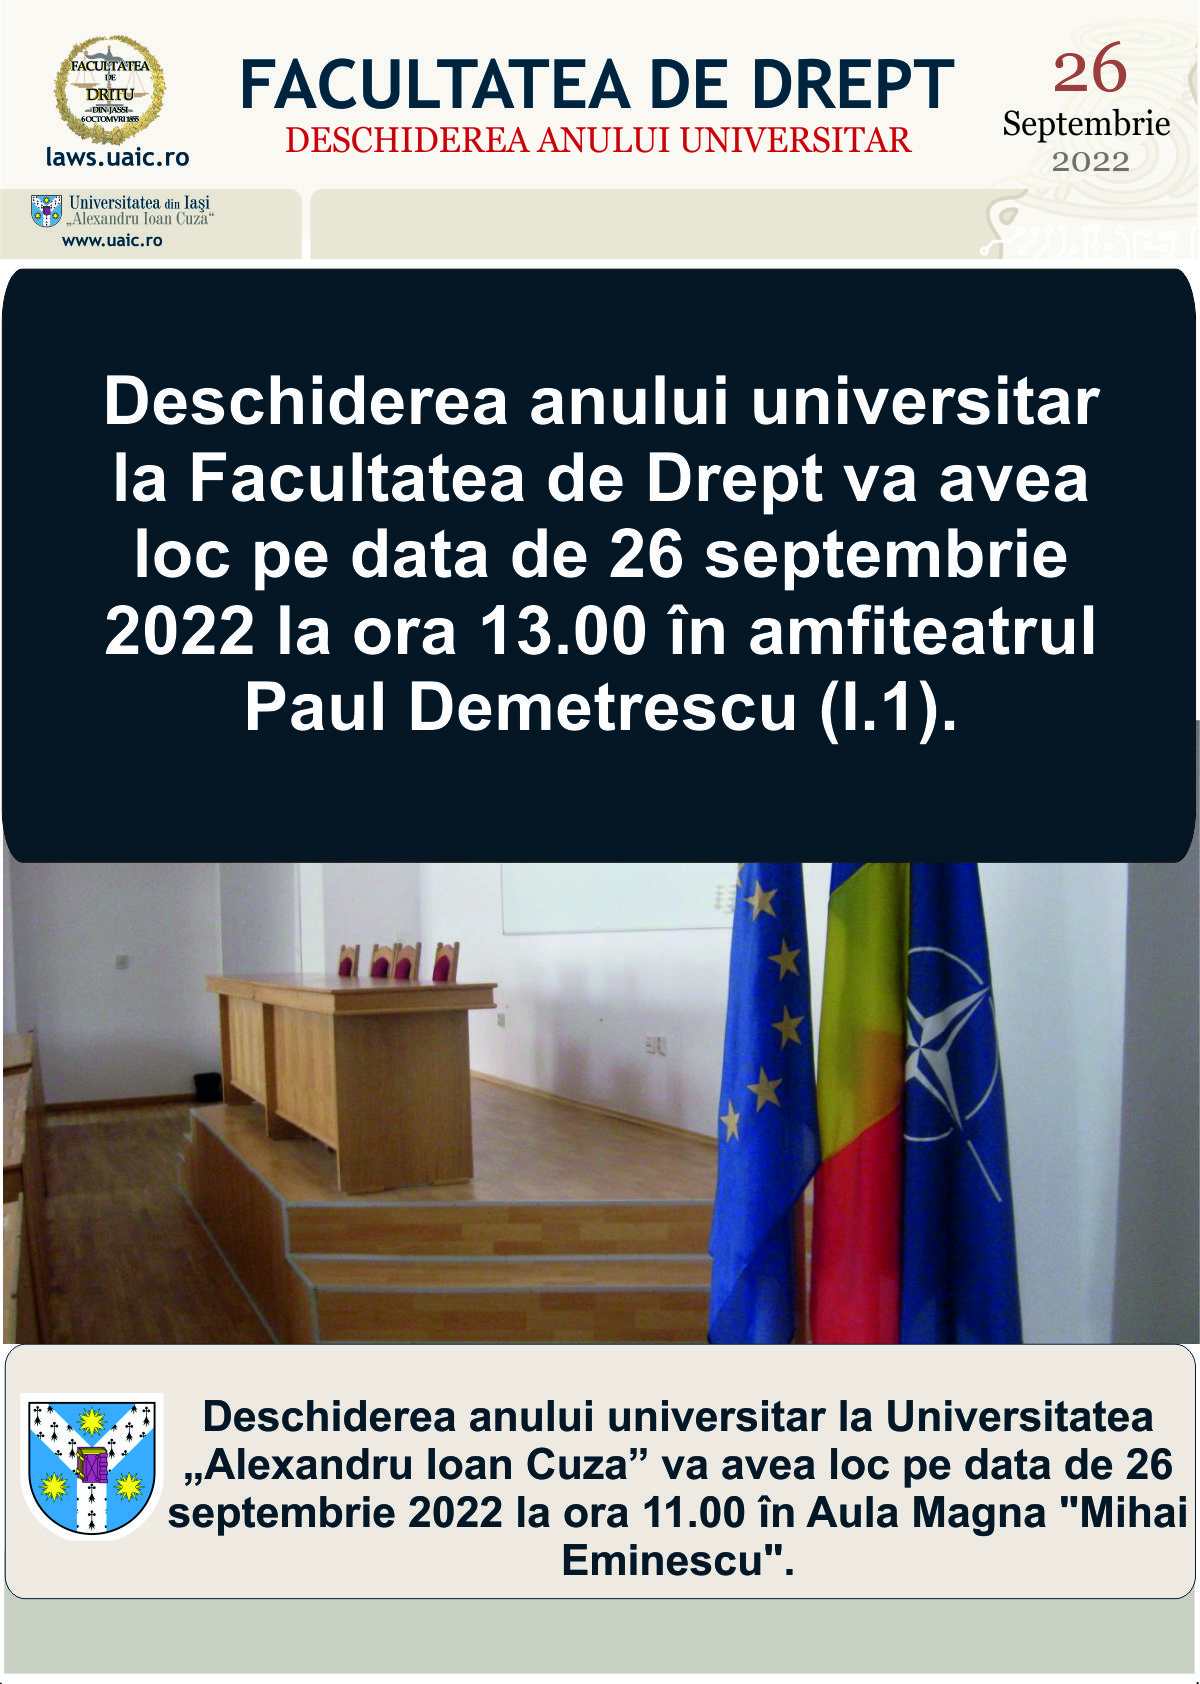 Deschiderea anului universitar la Facultatea de Drept va avea loc pe data de 26 septembrie 2022 la ora 13.00.